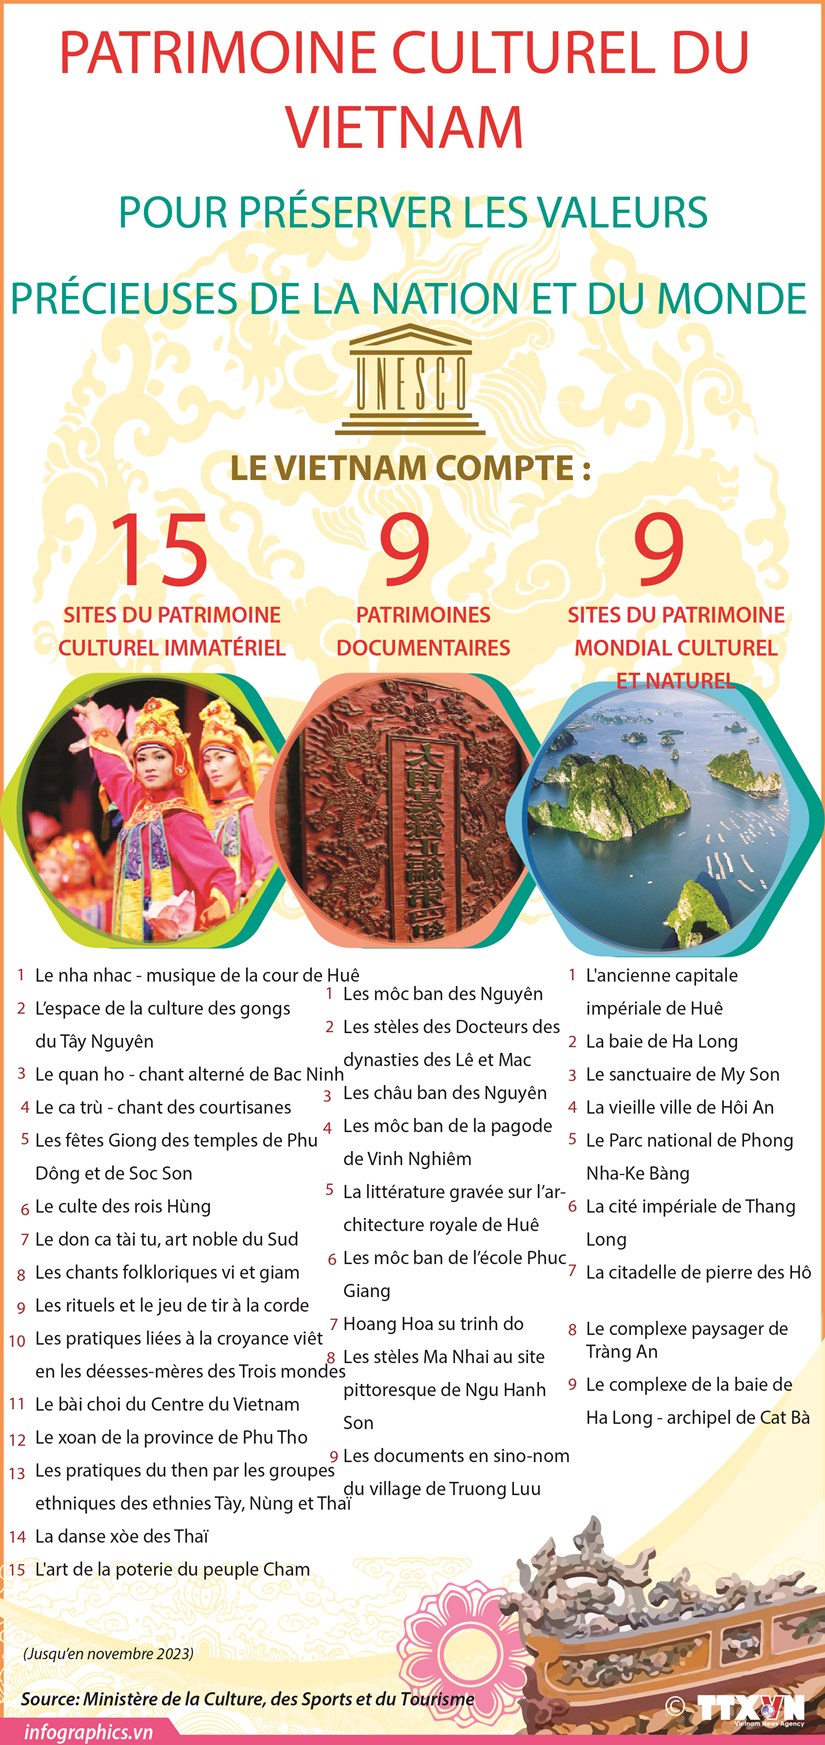 Patrimoine culturel du Vietnam pour preserver les valeurs precieuses de la nation et du monde hinh anh 1